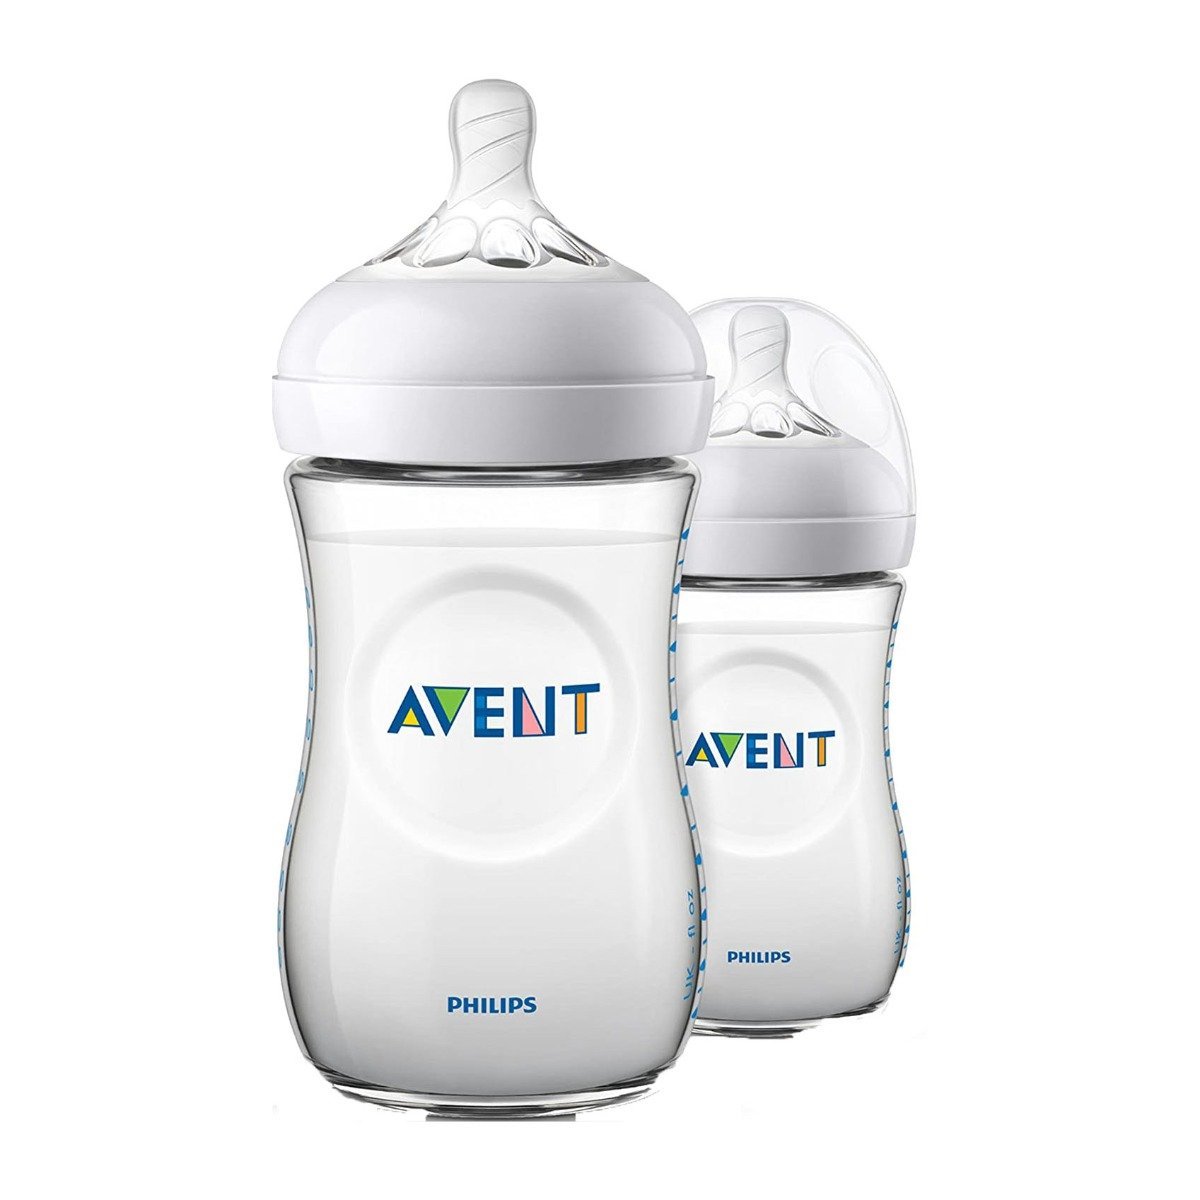 Avent Natural Baby Bottle 1m+ 2 Bottles - 260ml - Bloom Pharmacy